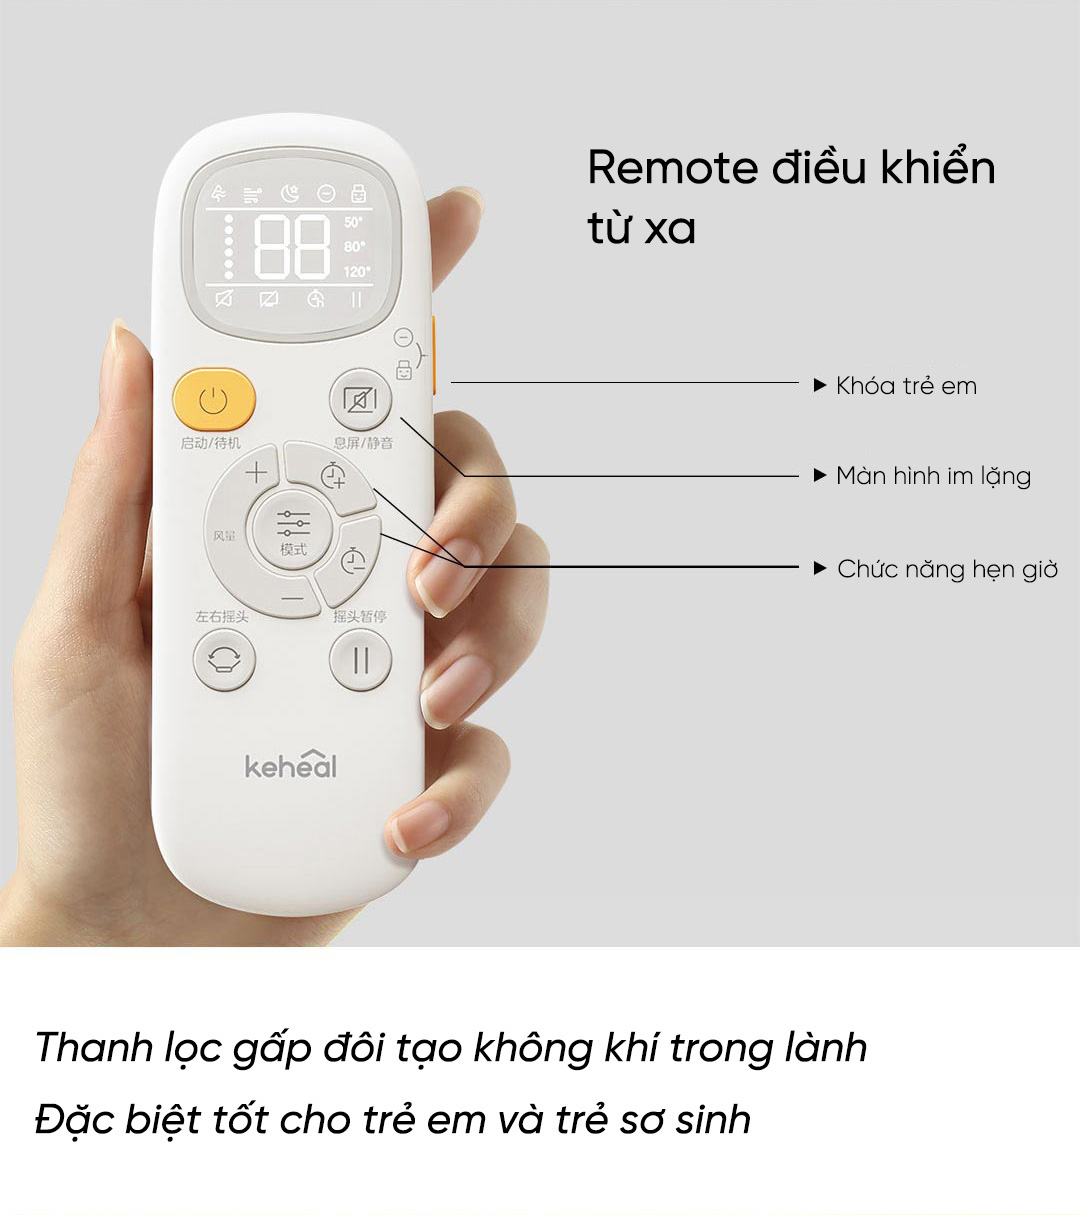 Remote điều khiển từ xa gồm các nút: Bật/Tắt nguồn, chức năng hẹn giờ, màn hinh im lặng